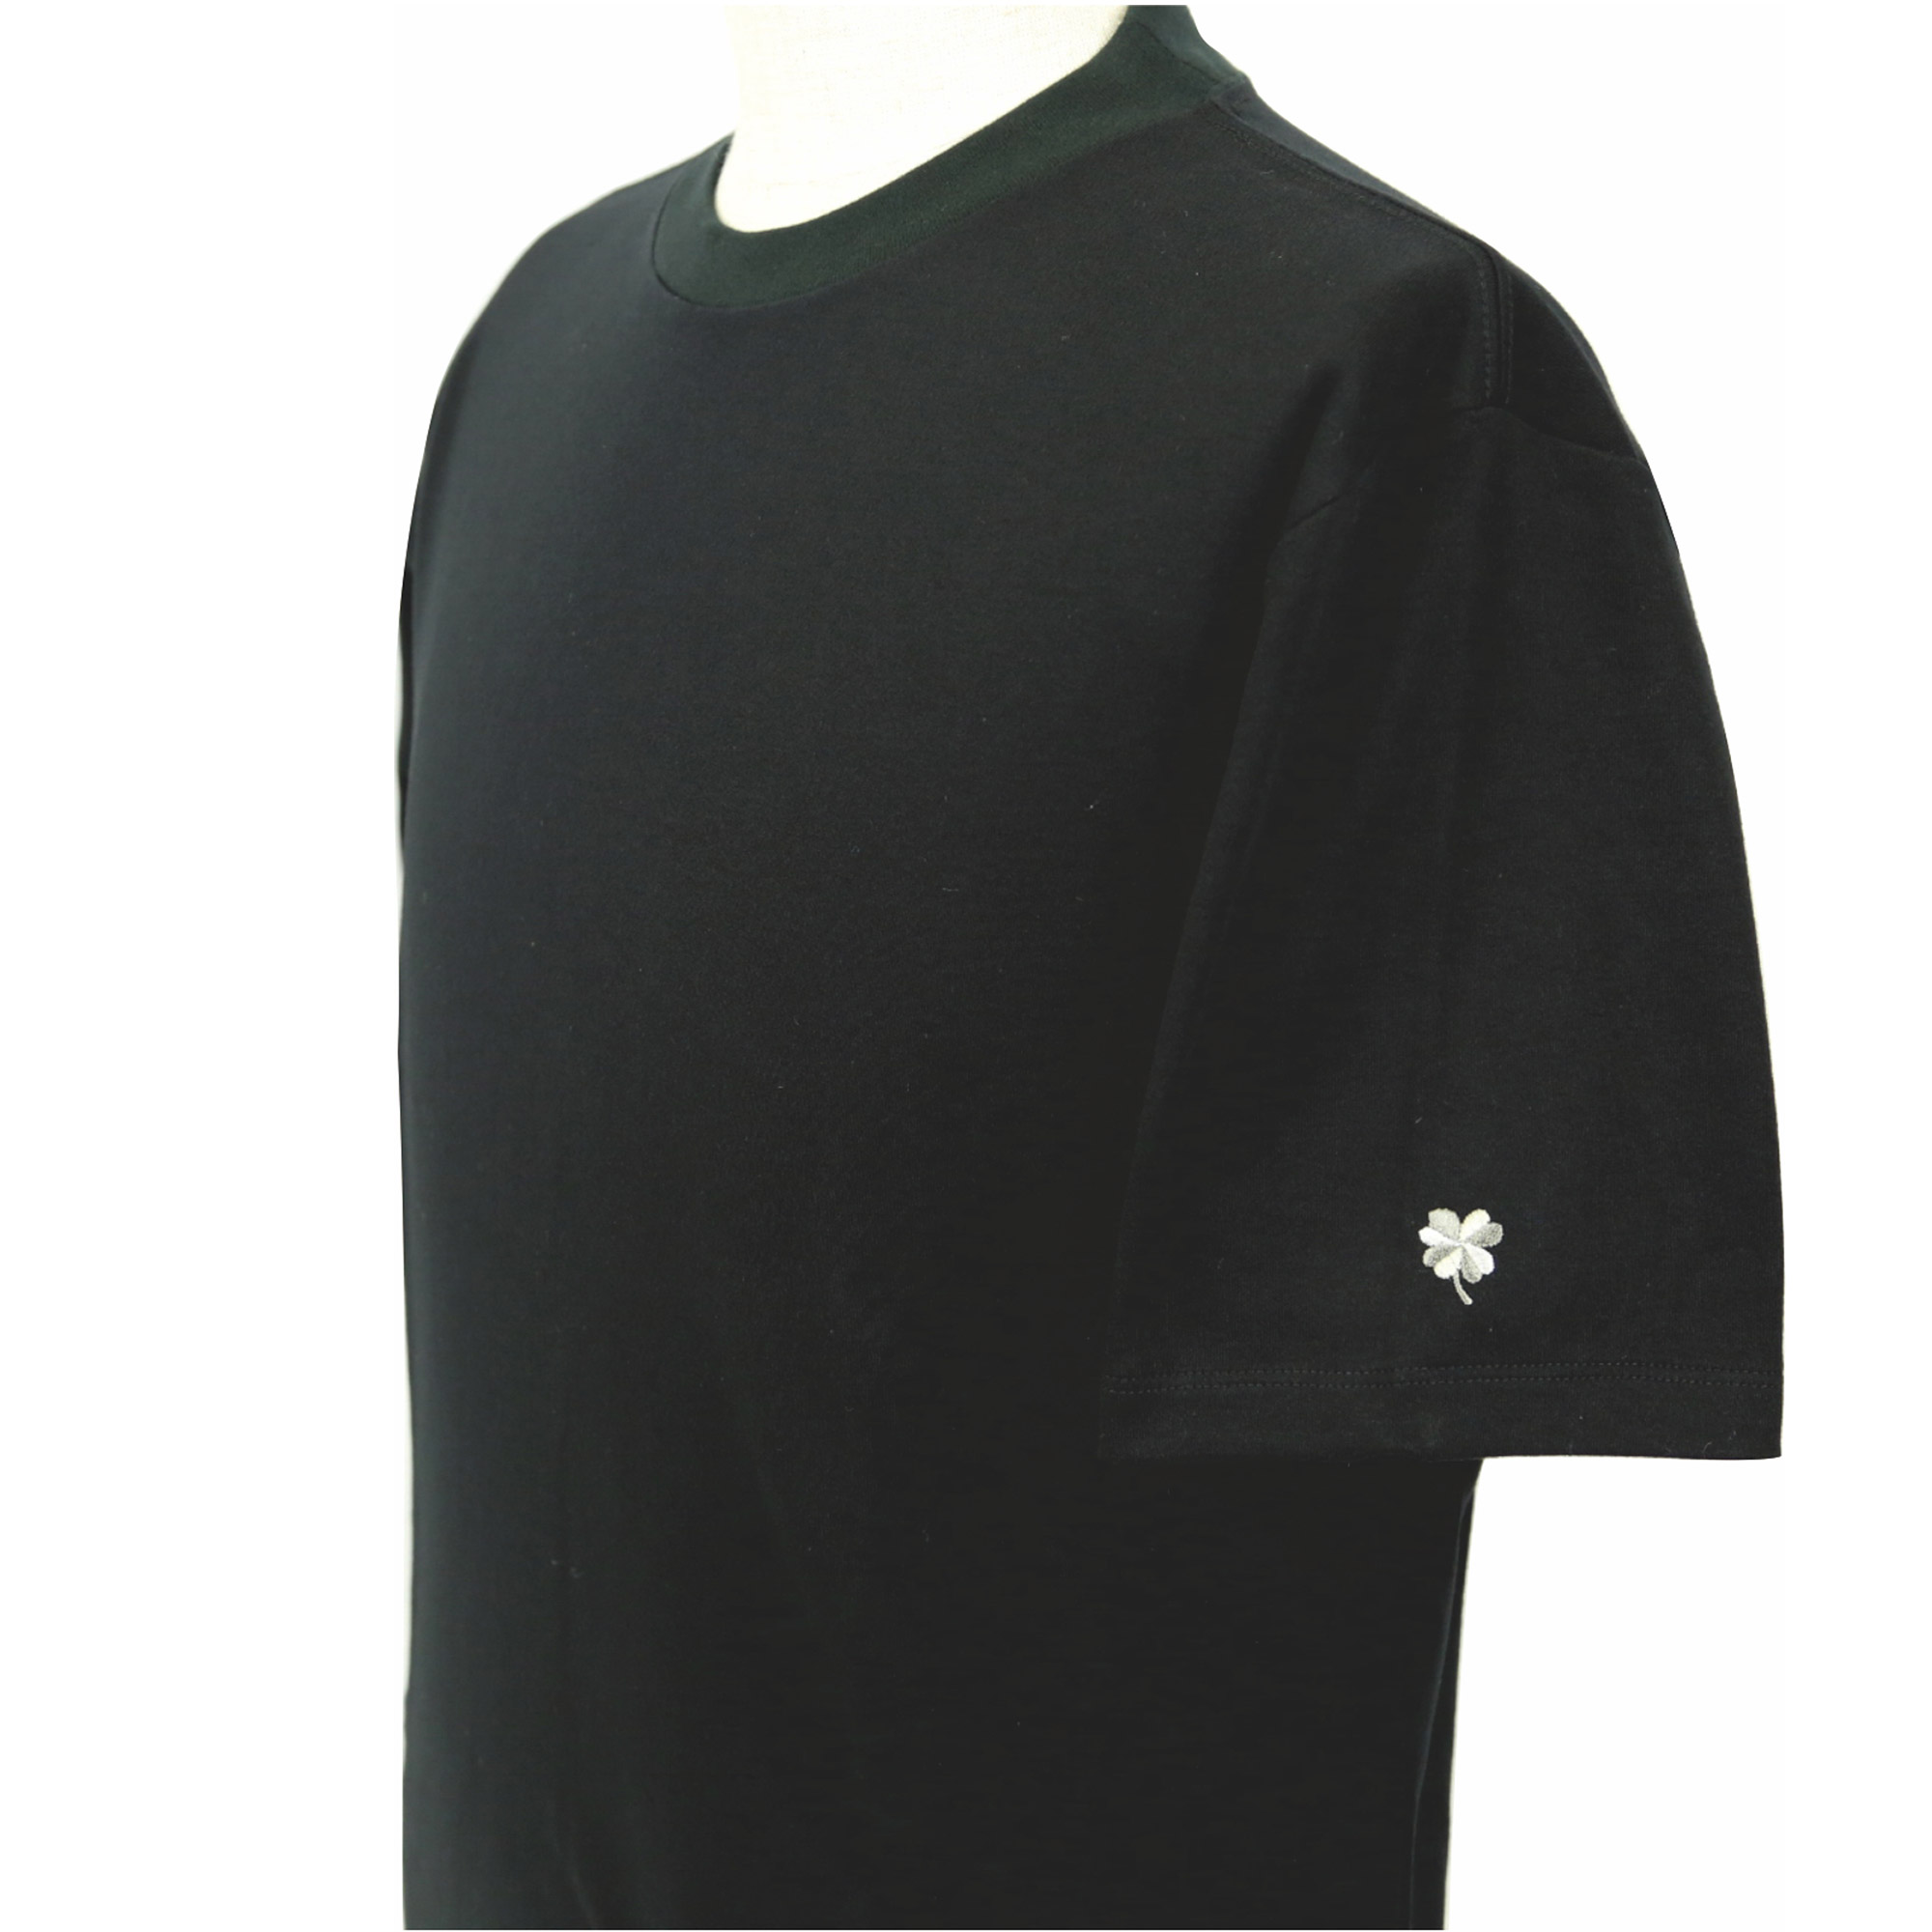 【値下げしました】プレミアムドレス Tシャツ  半袖  袖口刺繍  ブラック  日本製